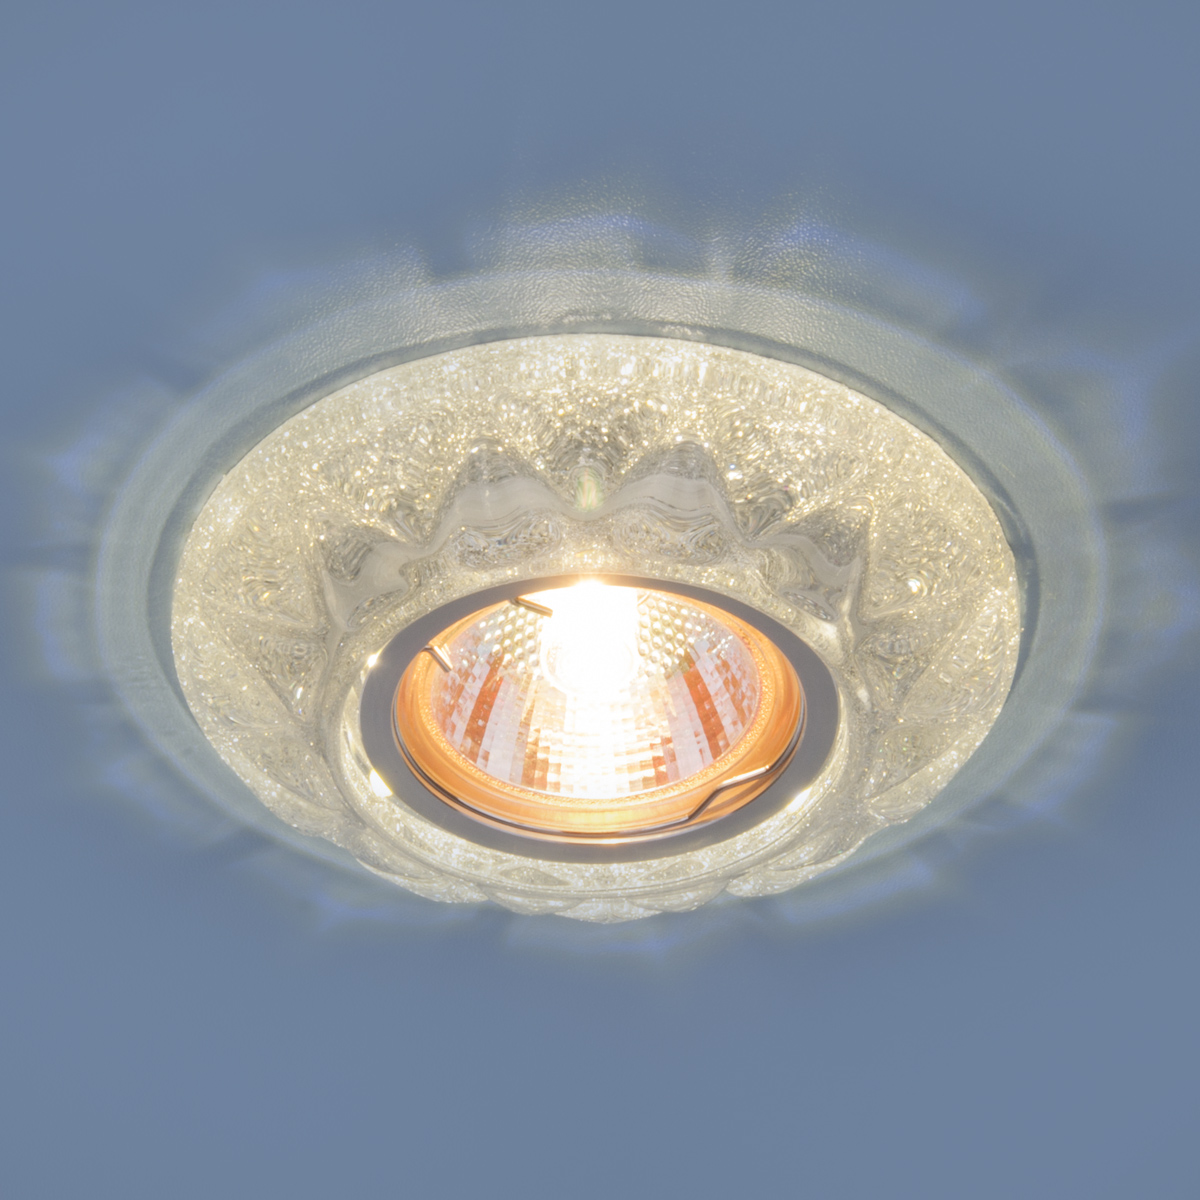 Точечный светильник со светодиодами 7249 MR16 SL серебряный блеск